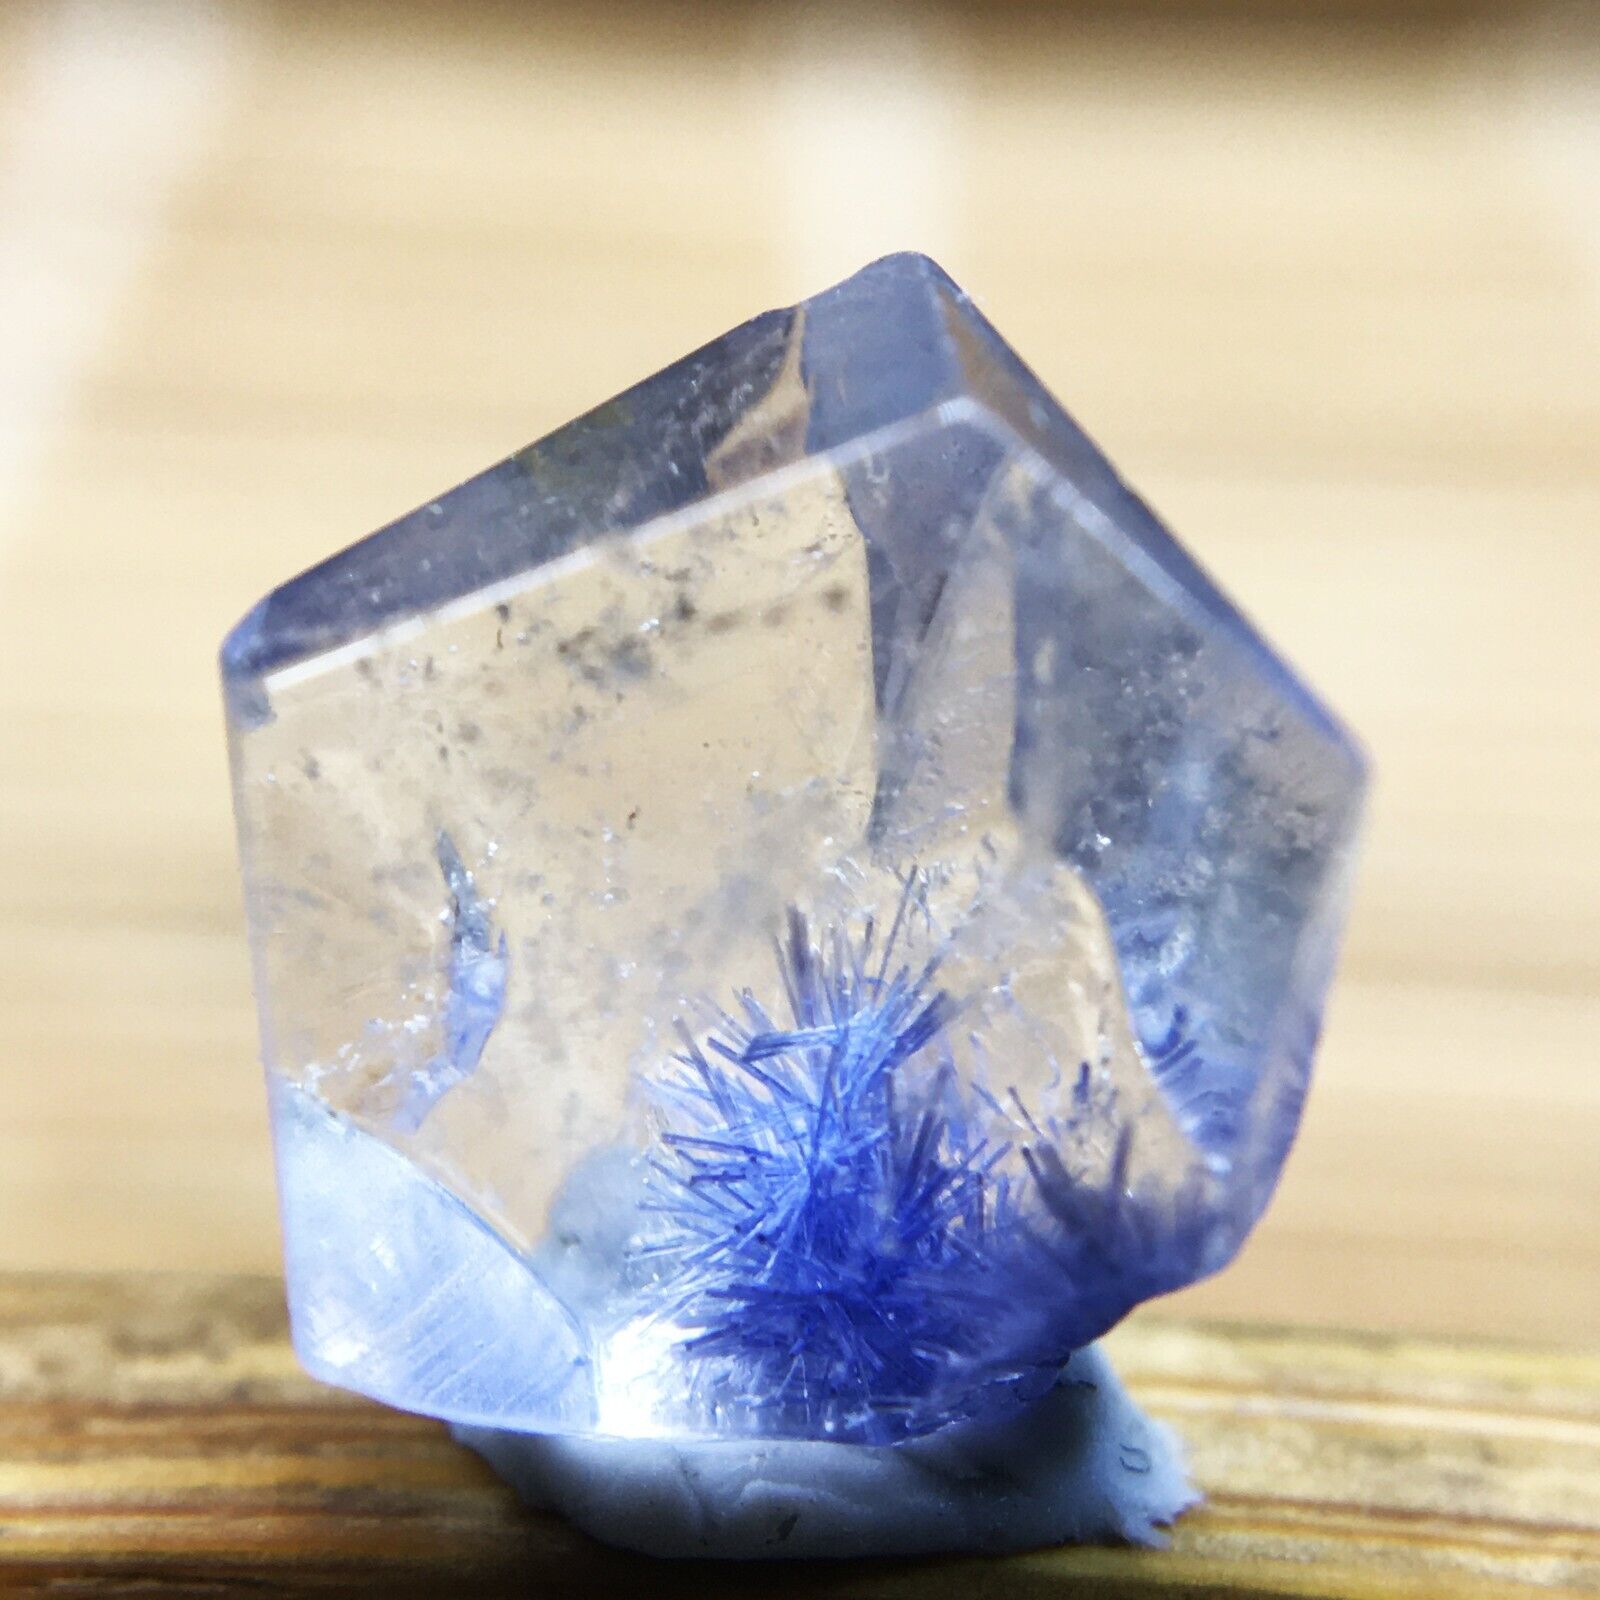 2.3Ct Very Rare NATURAL Beautiful Blue Dumortierite Quartz Crystal Specimen